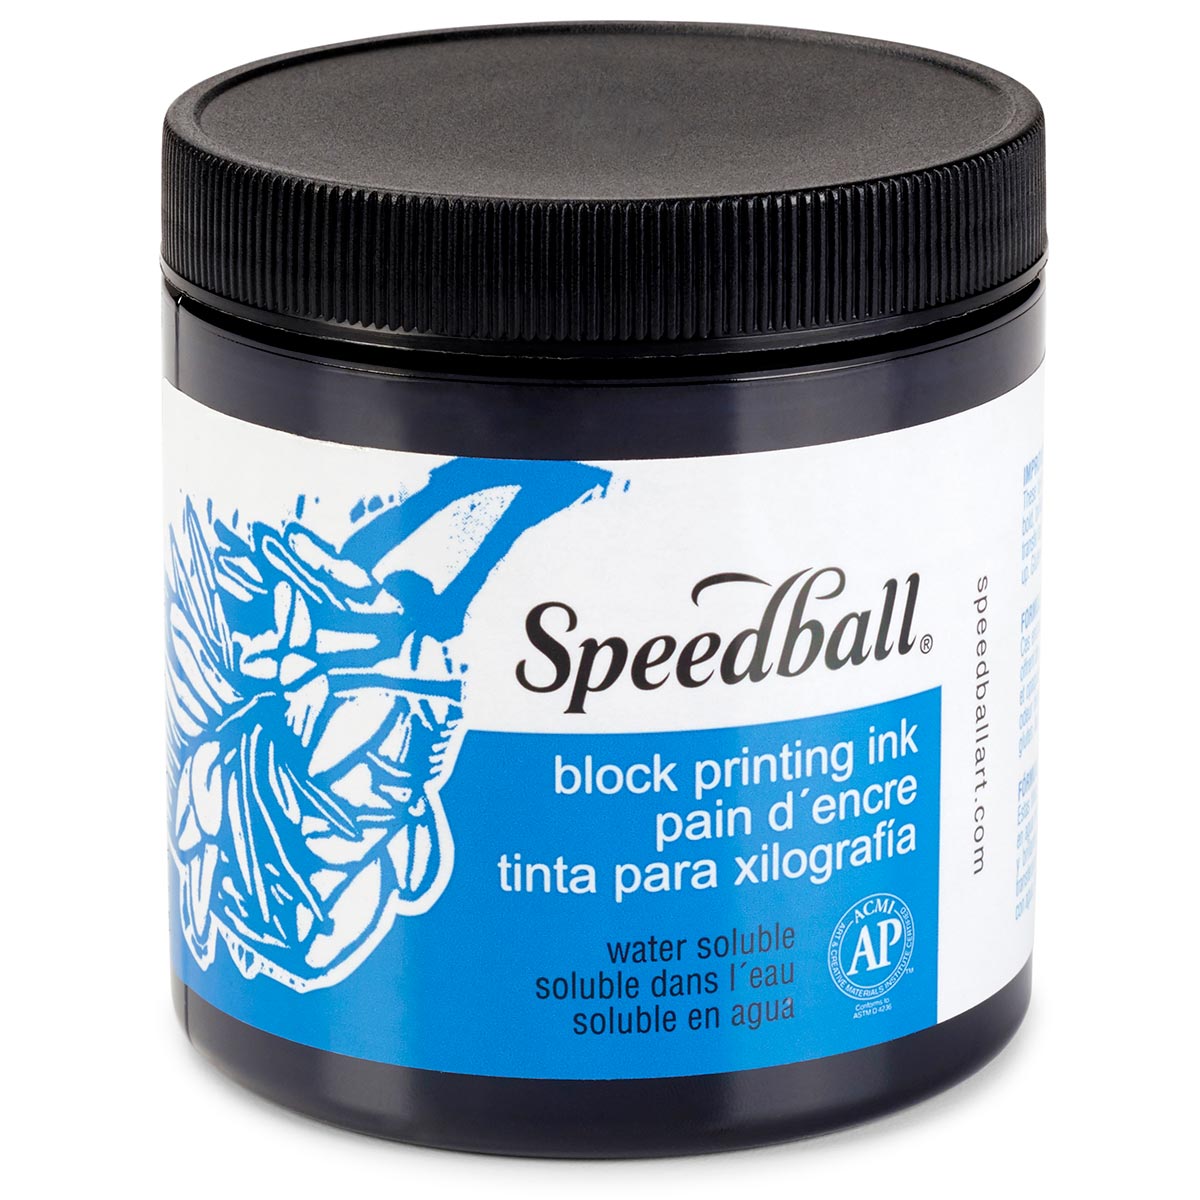 Speedball-Wasser lösliche Block-Tinte 236ml (8oz) -Schwarz